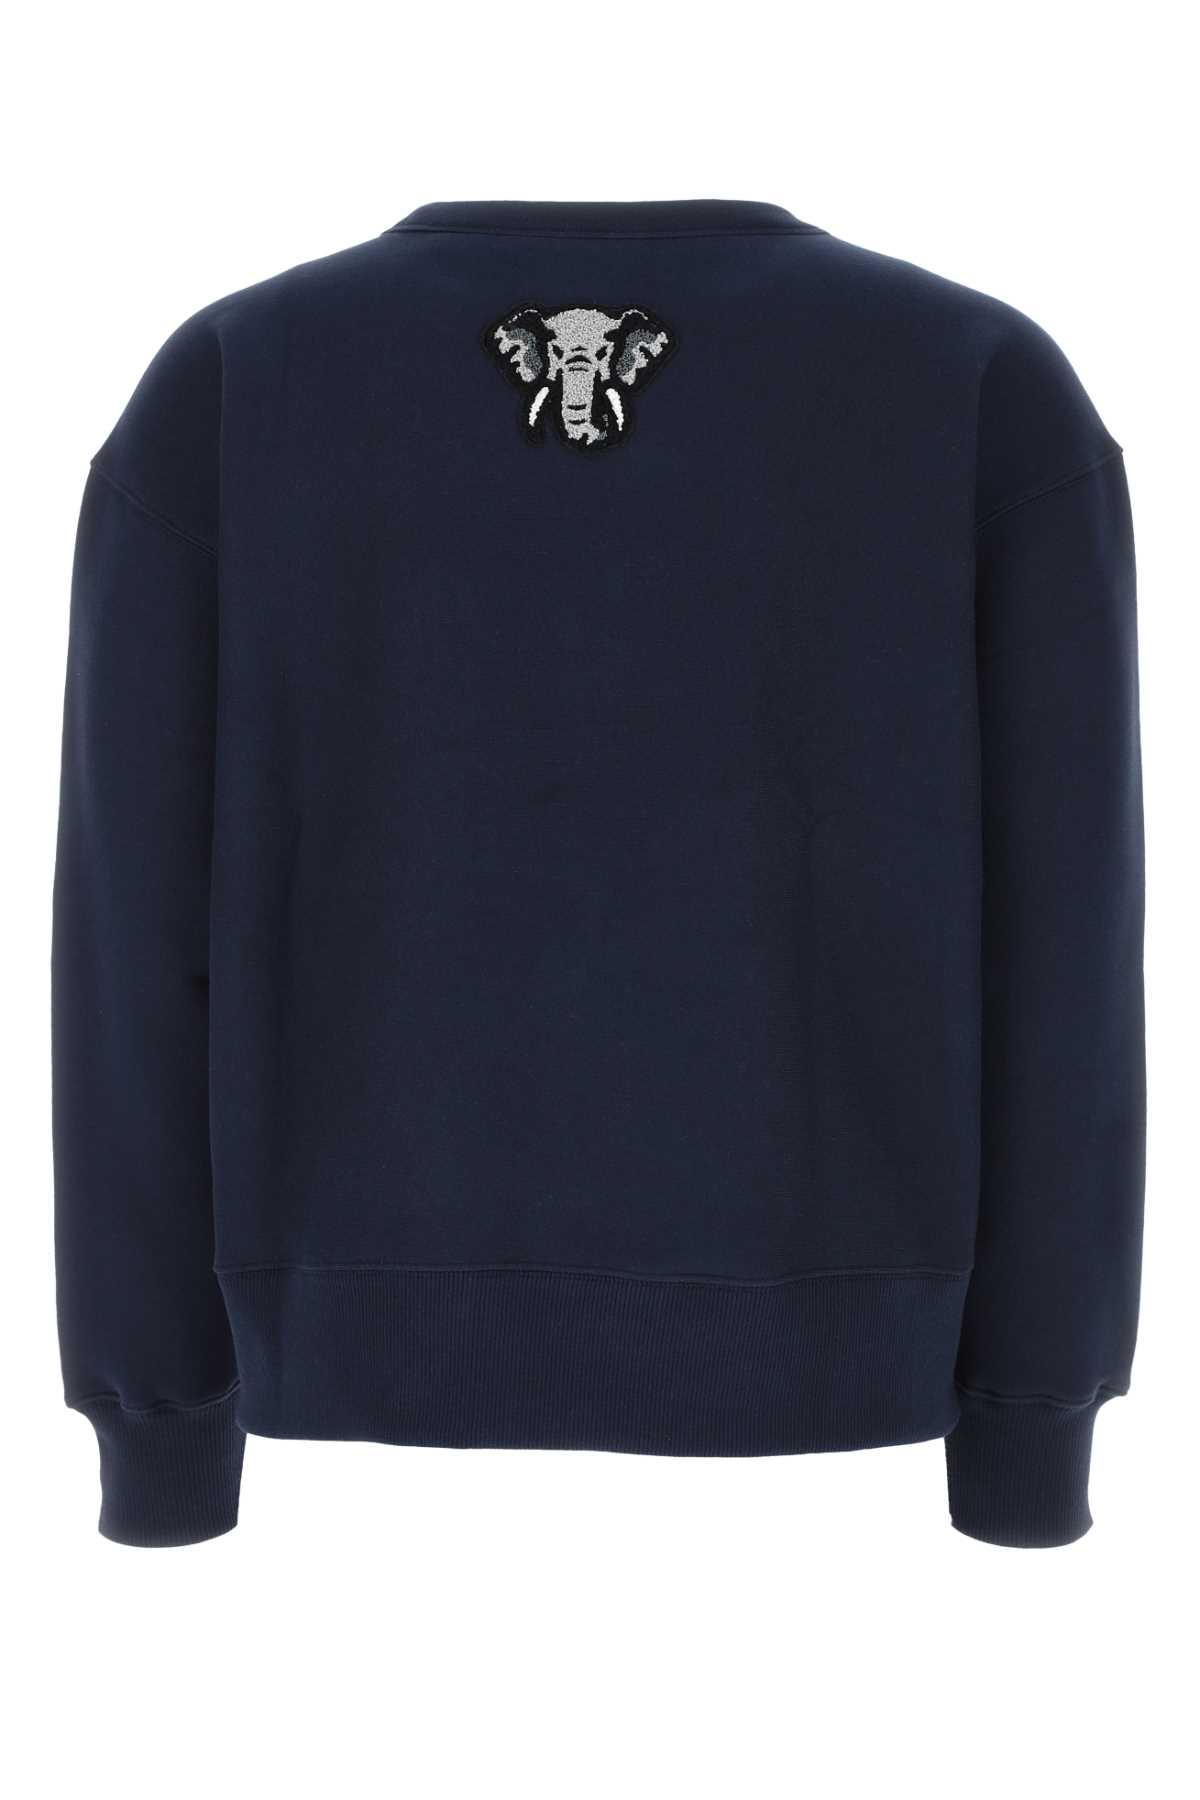 Kenzo Midnight Blue Cotton Varsity Sweatshirt In 77